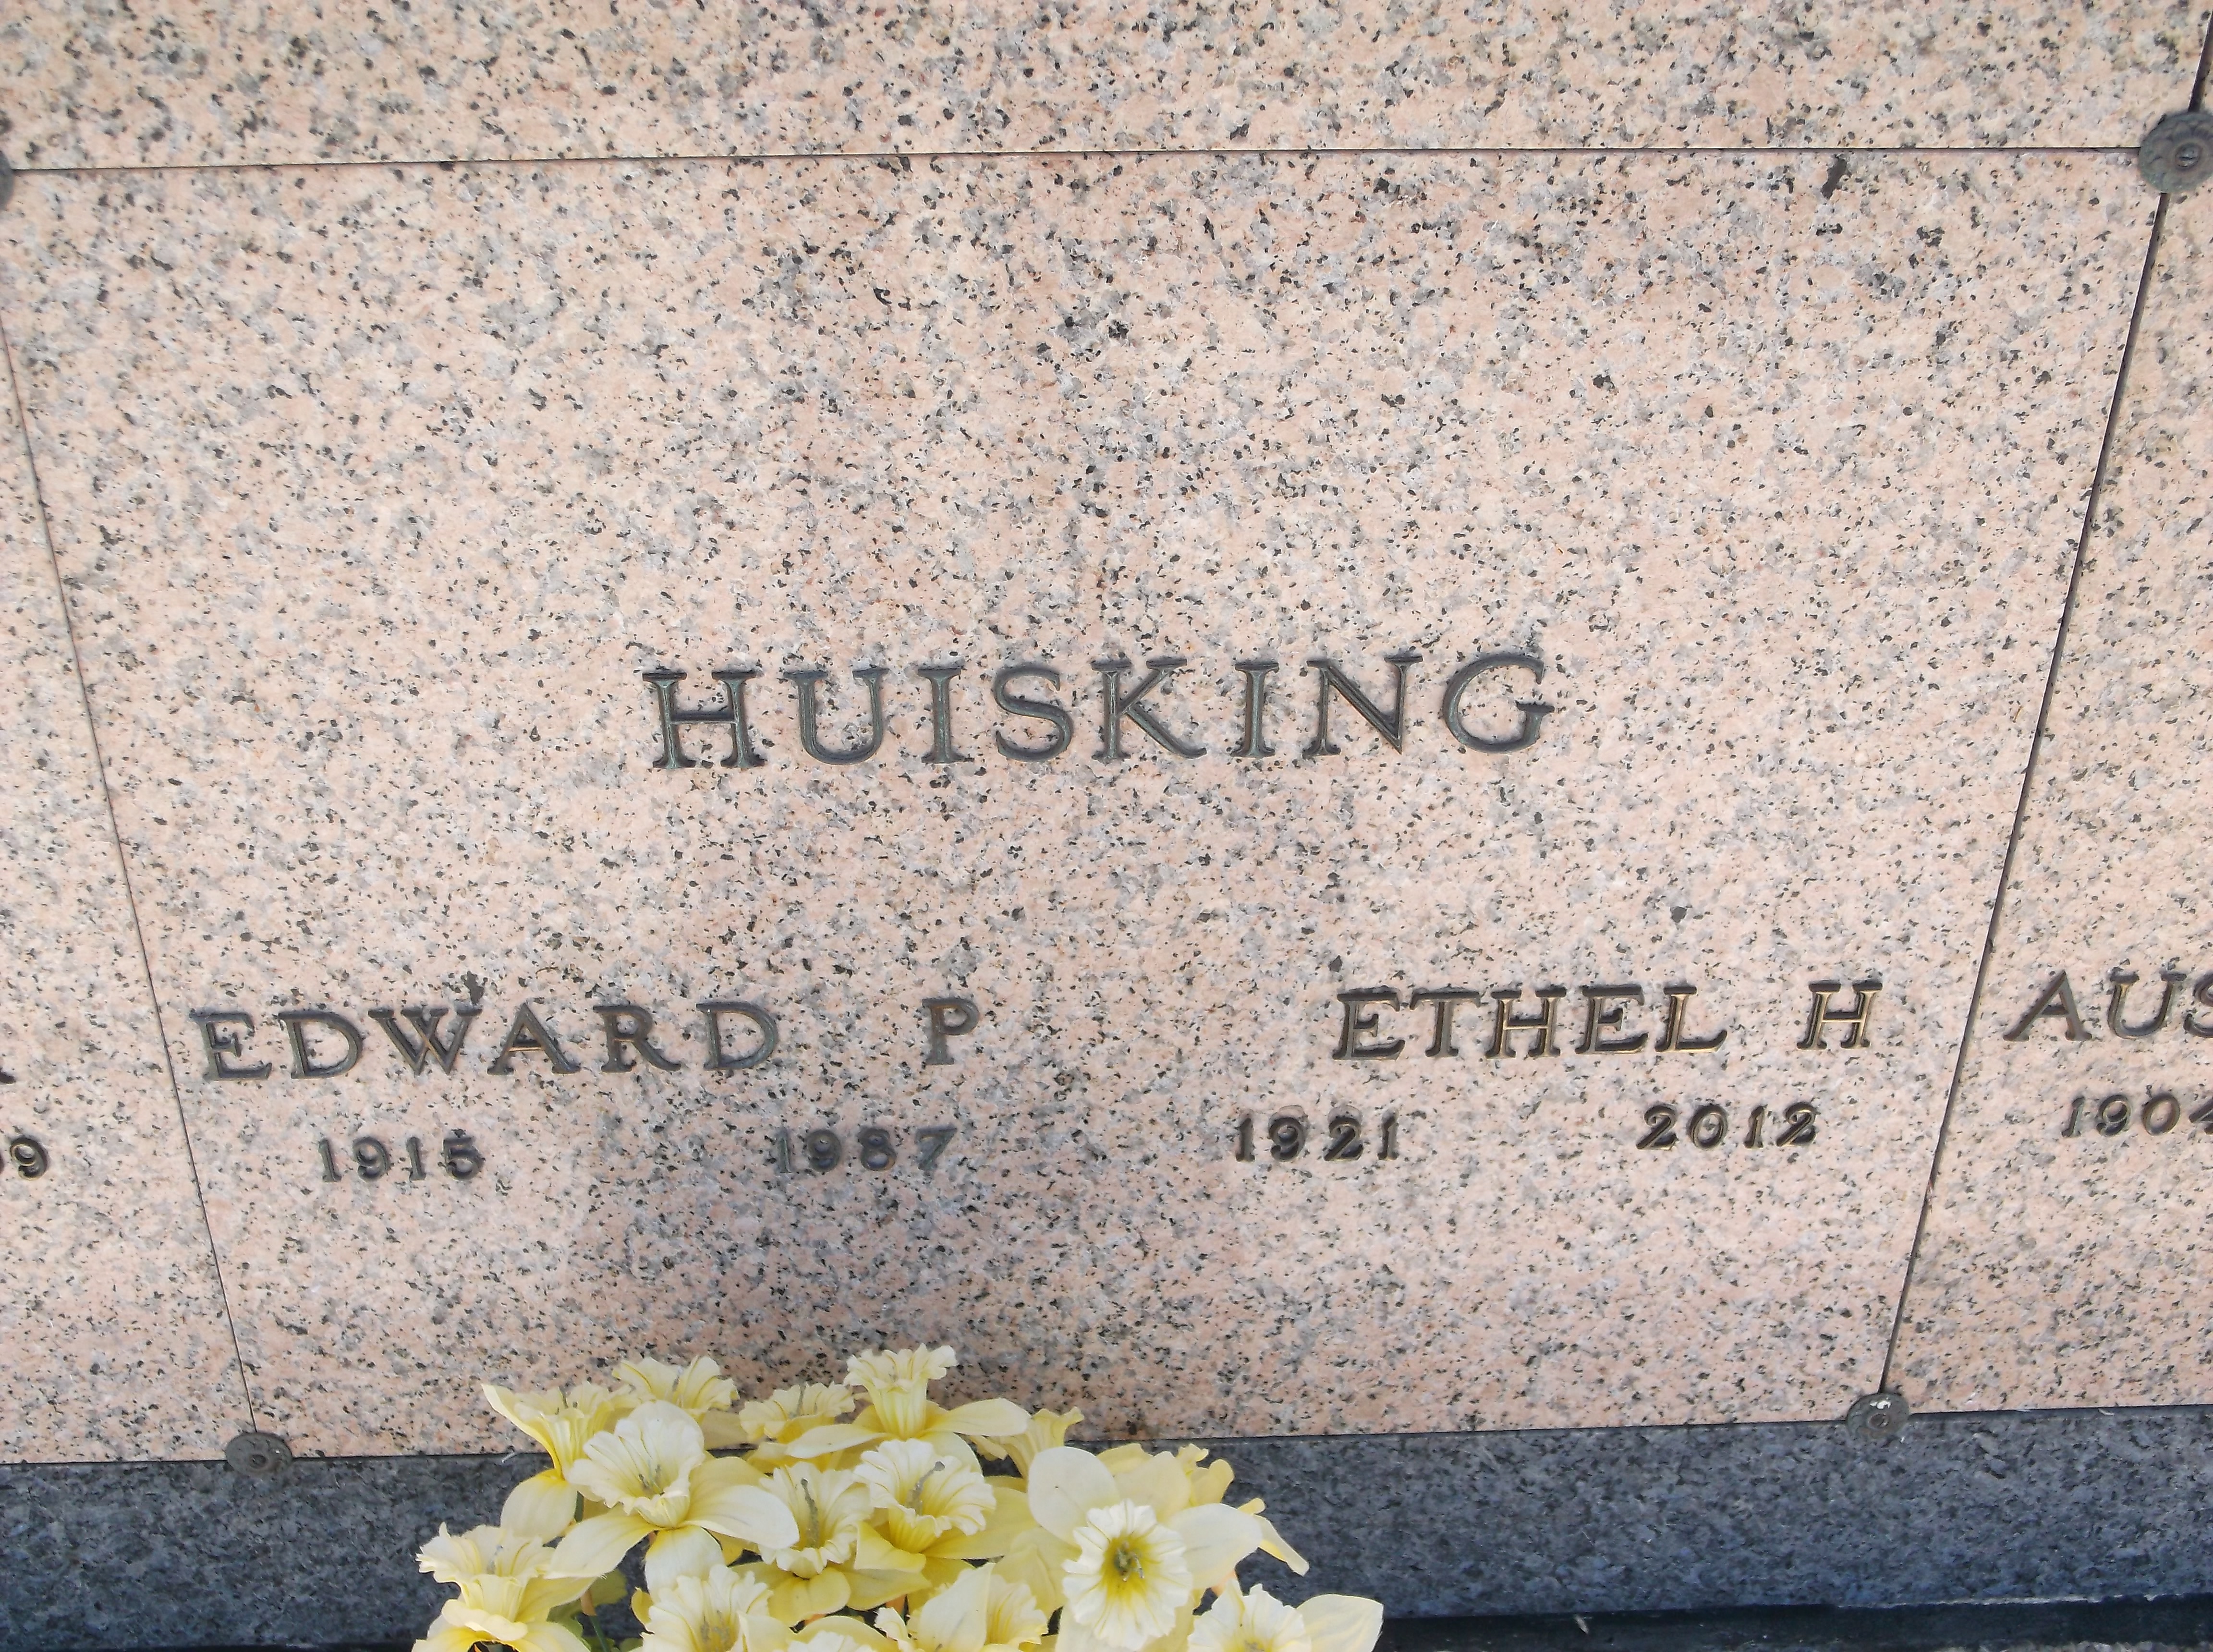 Ethel H Huisking